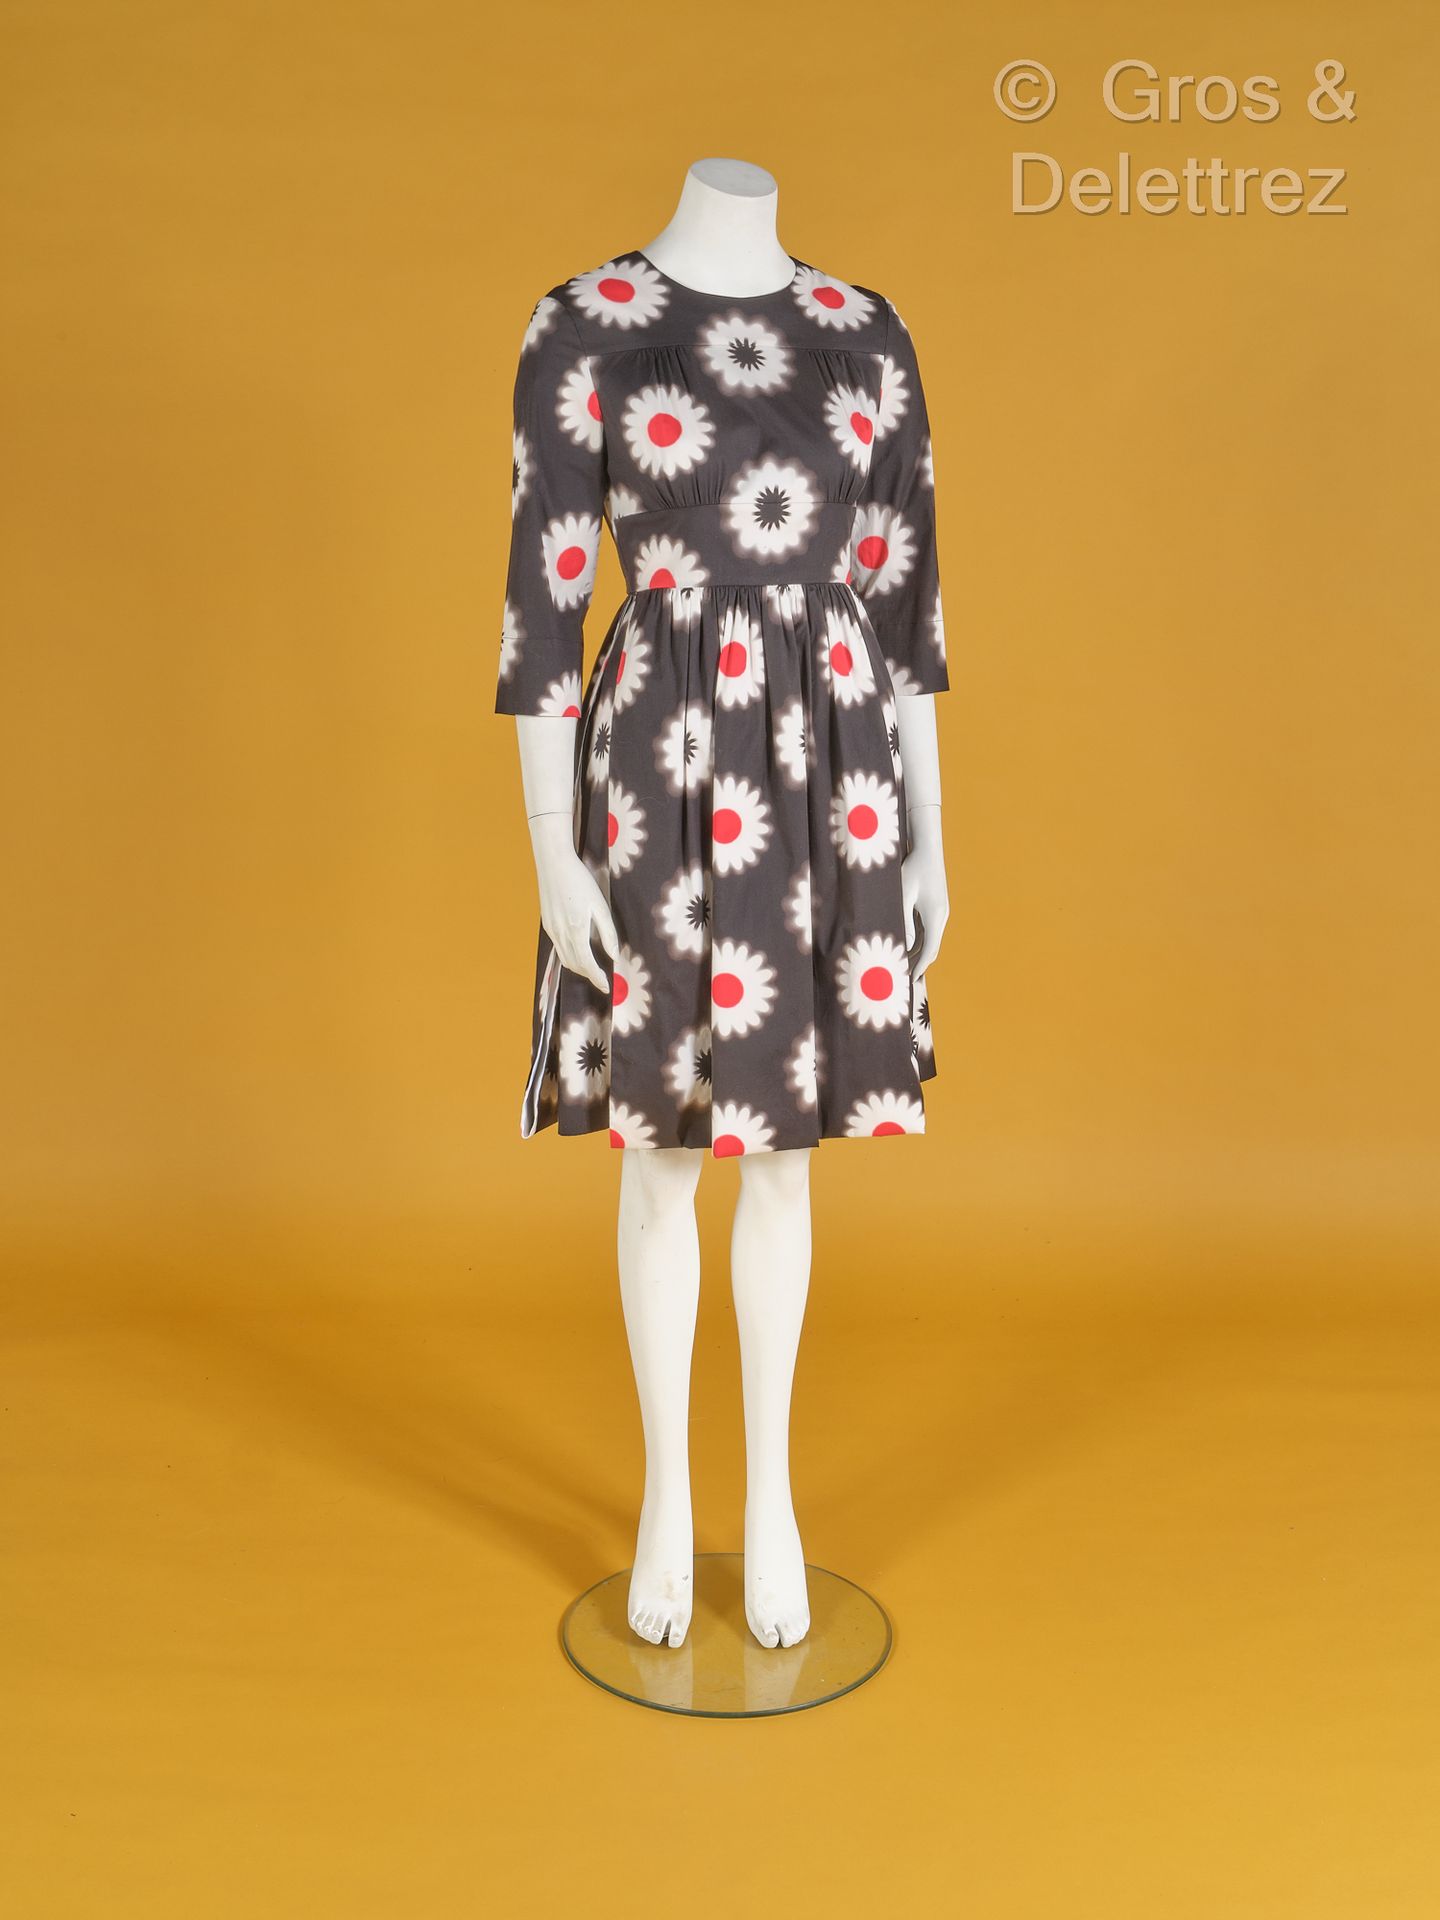 PRADA Prêt-à-porter-Kollektion Frühjahr/Sommer 2013
Kleid aus schwarzer Baumwoll&hellip;